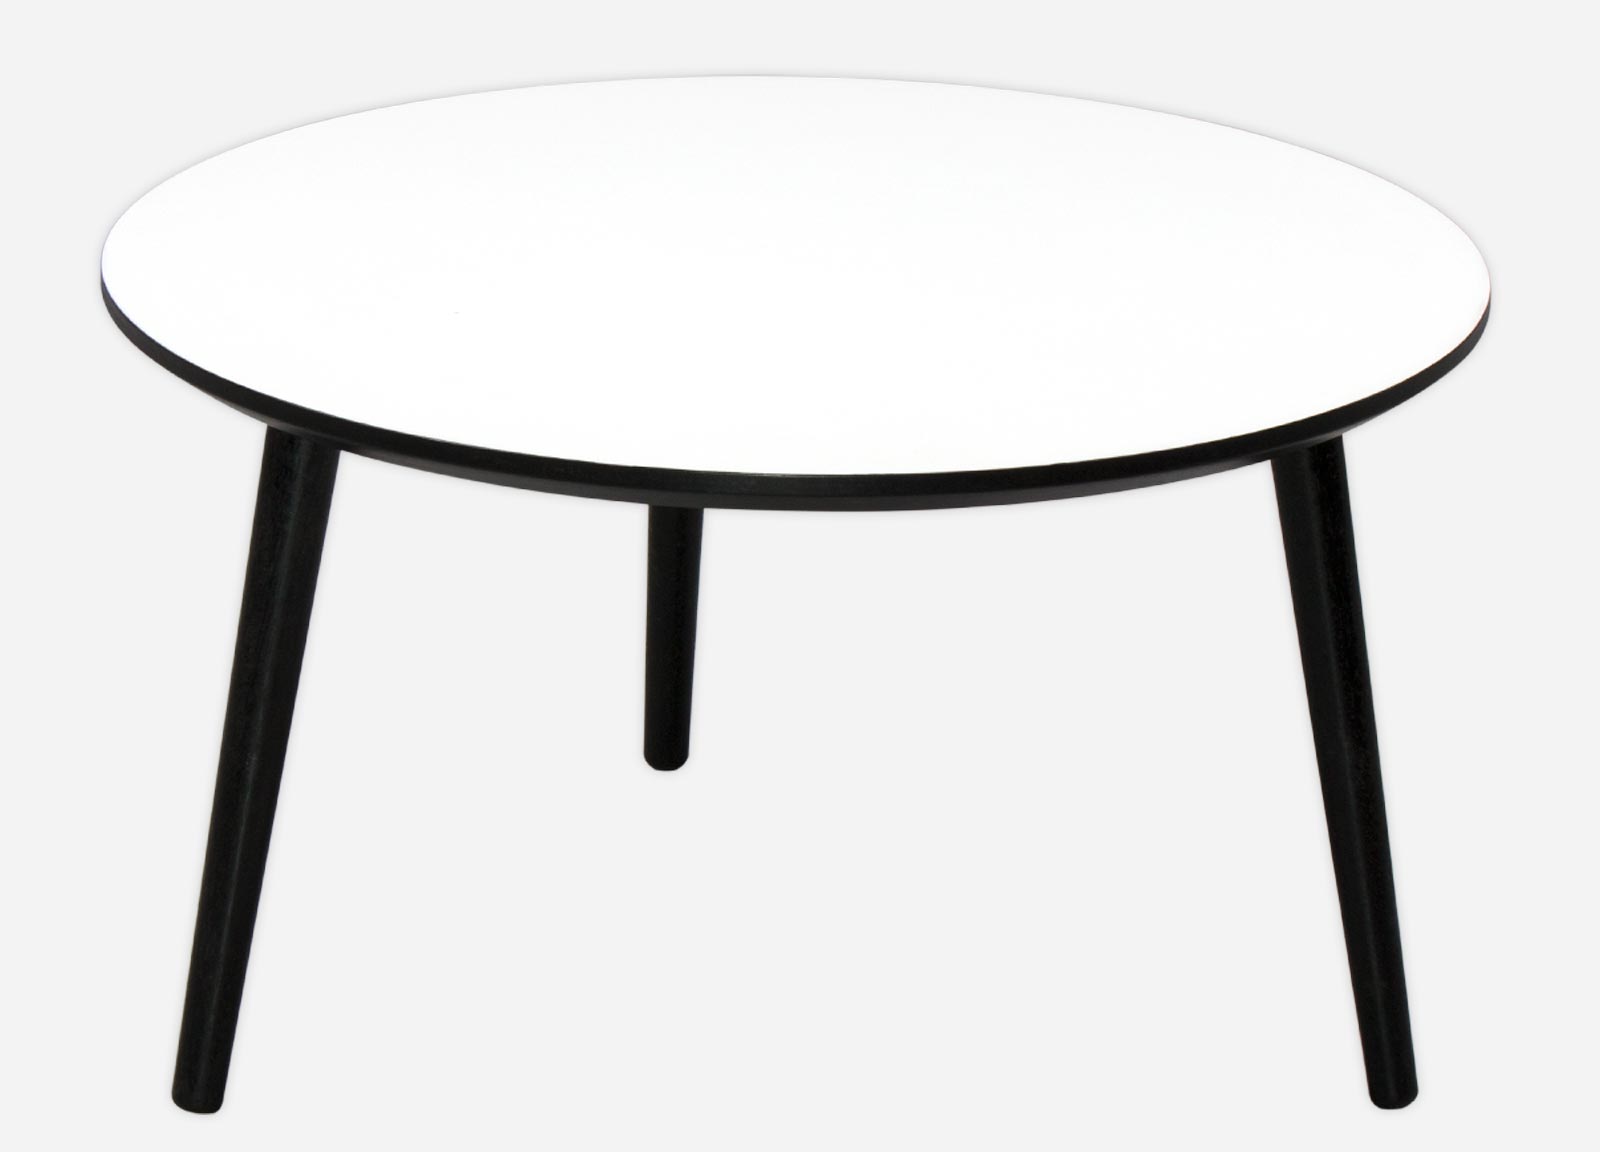 sofabord med i enten hvid, sort eller antracit